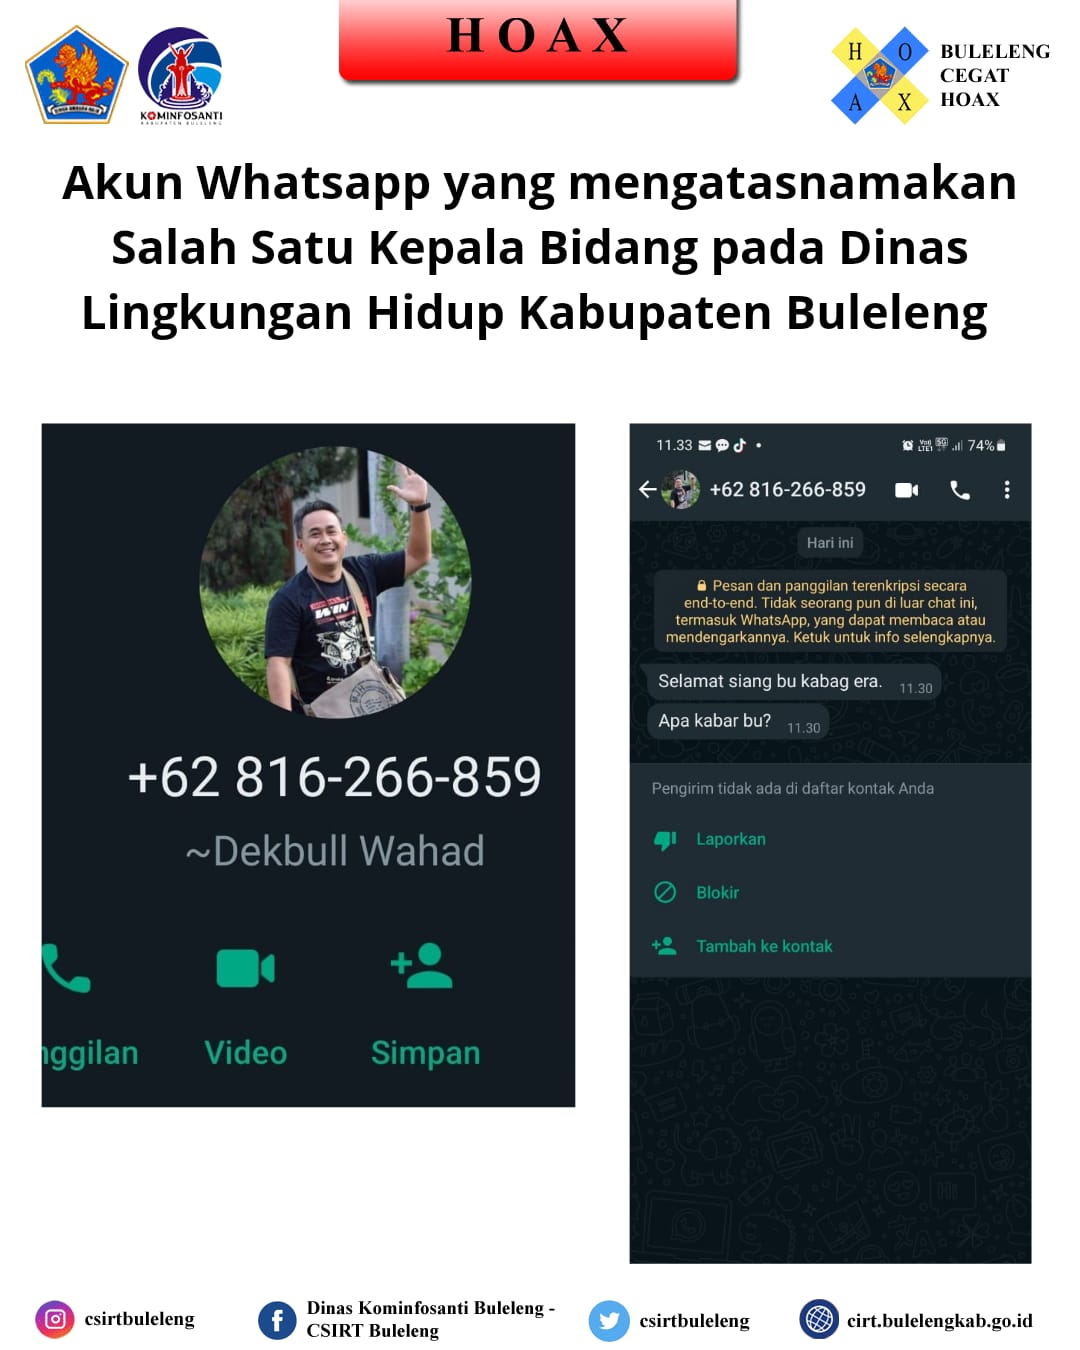 Akun Whatsapp yang mengatasnamakan Salah Satu Kepala Bidang Pada Dinas Lingkungan Hidup Kabupaten Buleleng